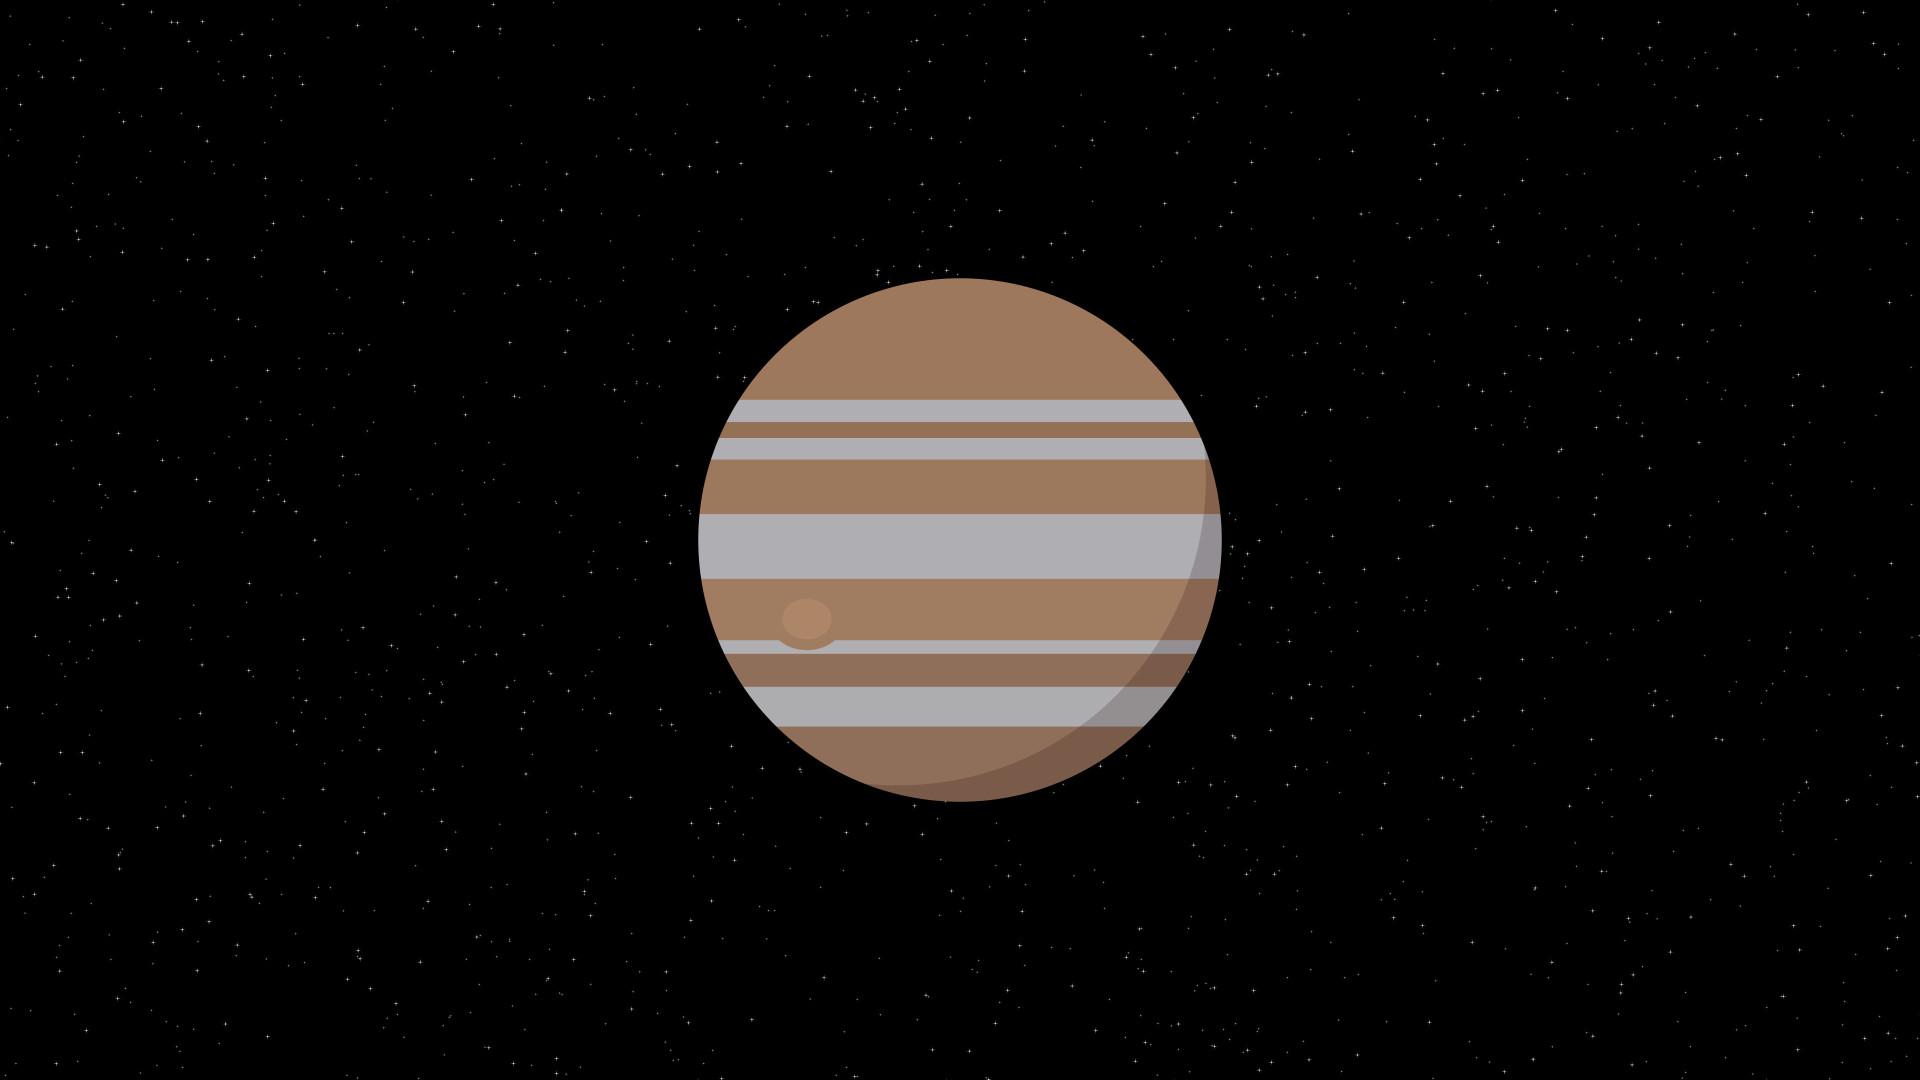 Jupiter Planet Minimalism 4k Laptop Full HD 1080P